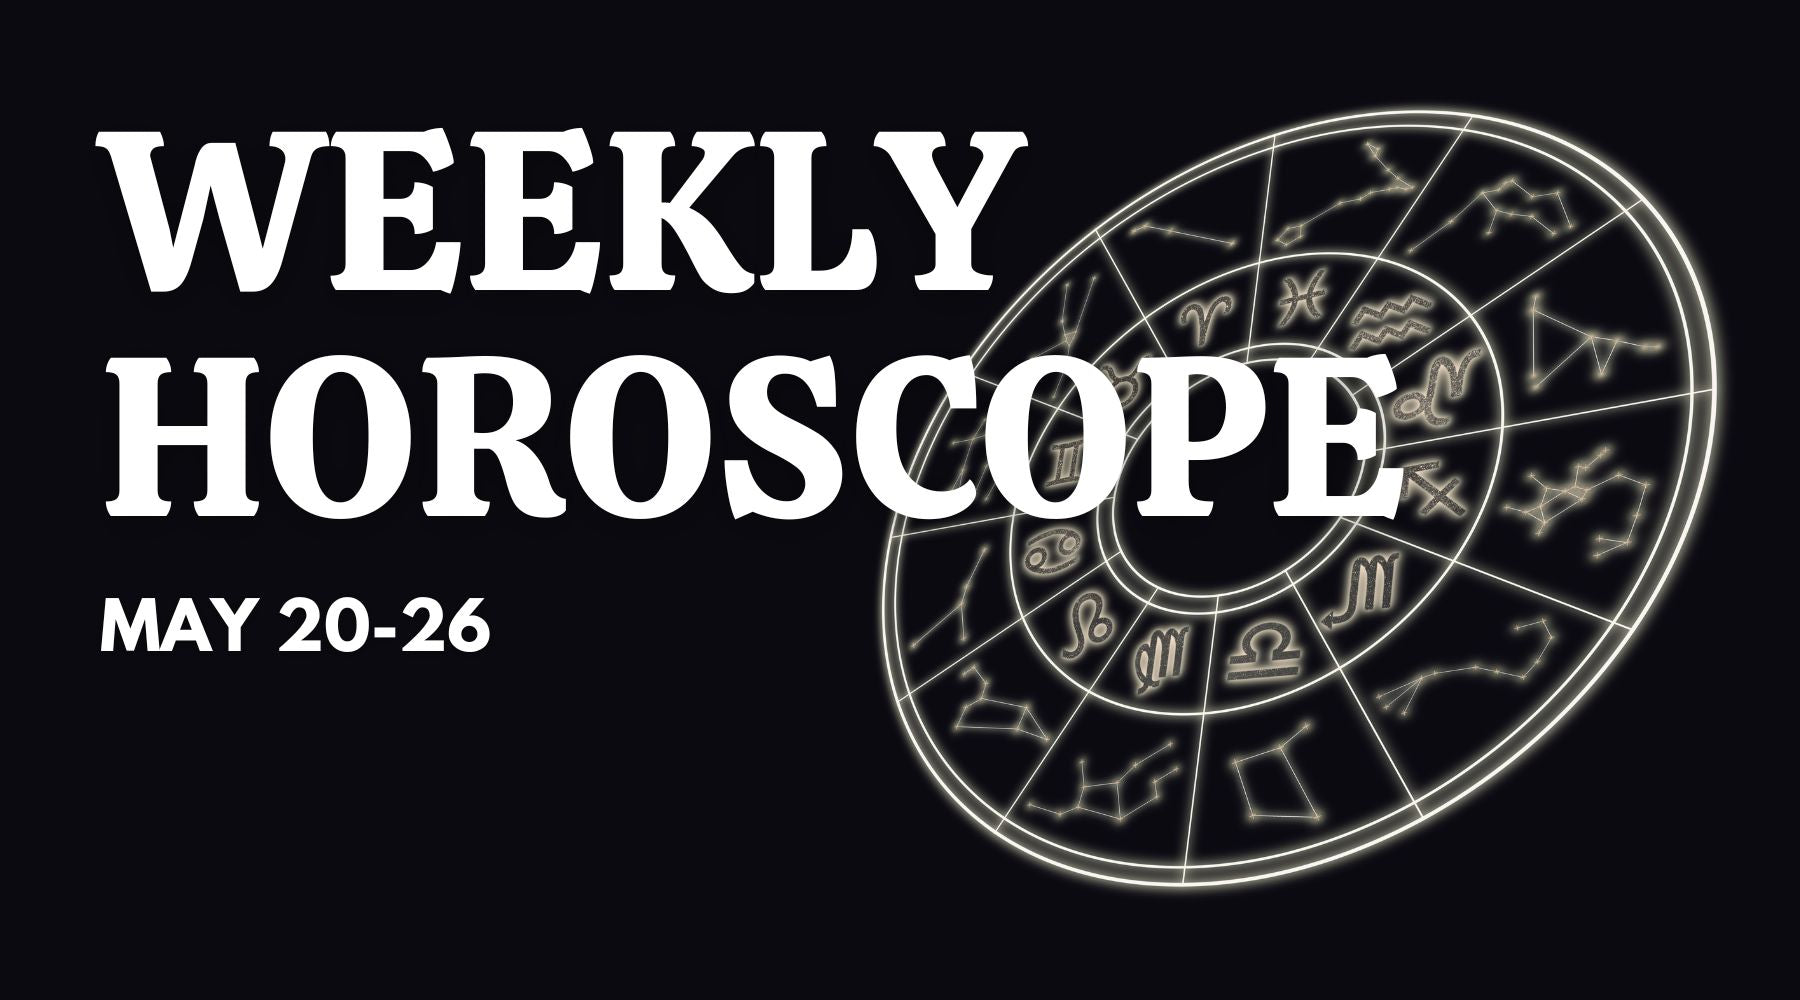 Weekly Horoscope May 20-26